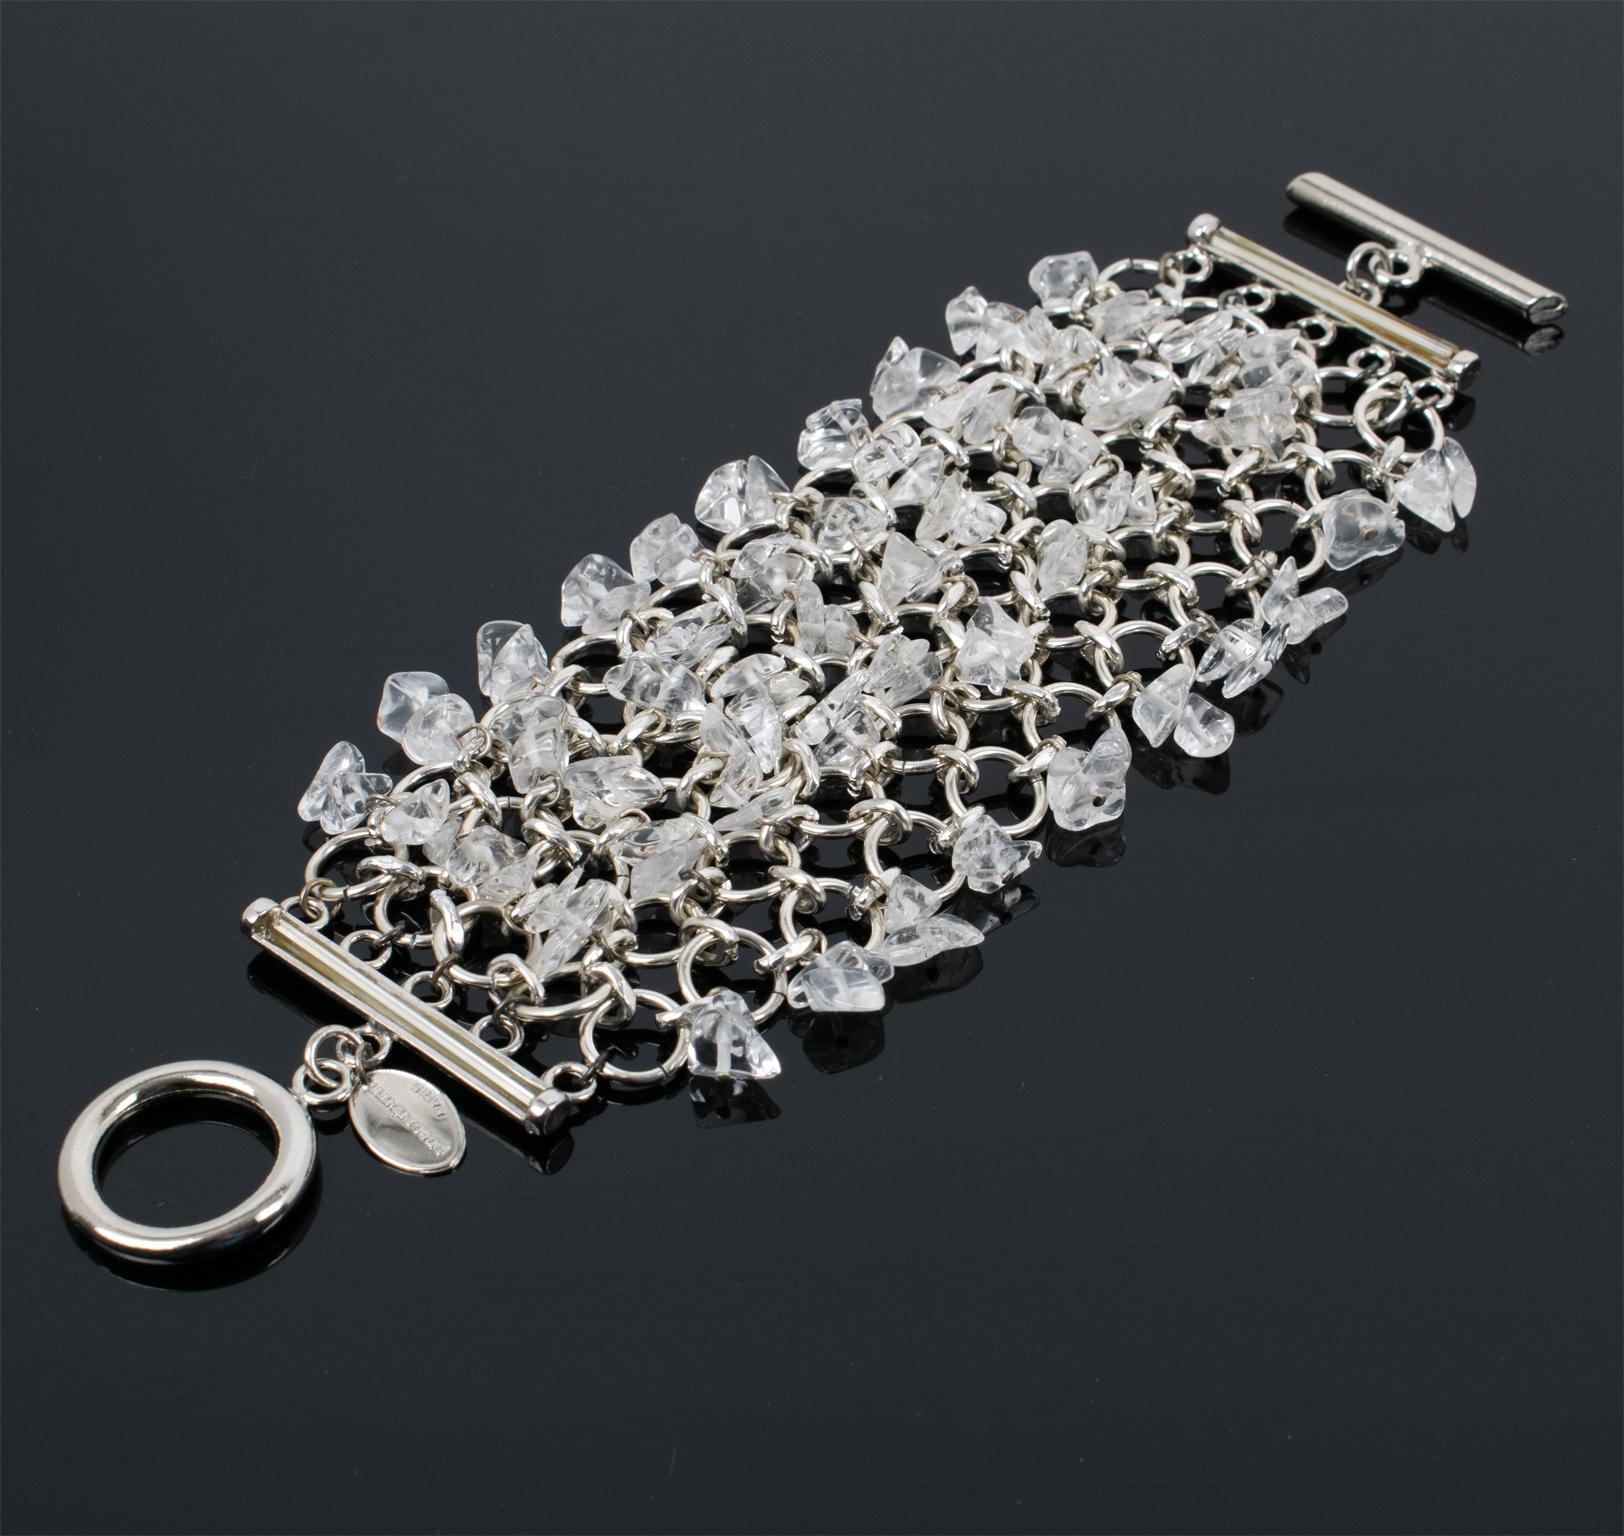 Ce magnifique bracelet à maillons futuriste de Paco Rabanne Paris présente une grille massive en cotte de mailles de couleur argentée, ornée de puces de quartz transparentes. Le bracelet se ferme à l'aide d'un grand fermoir à bascule, et le logo de